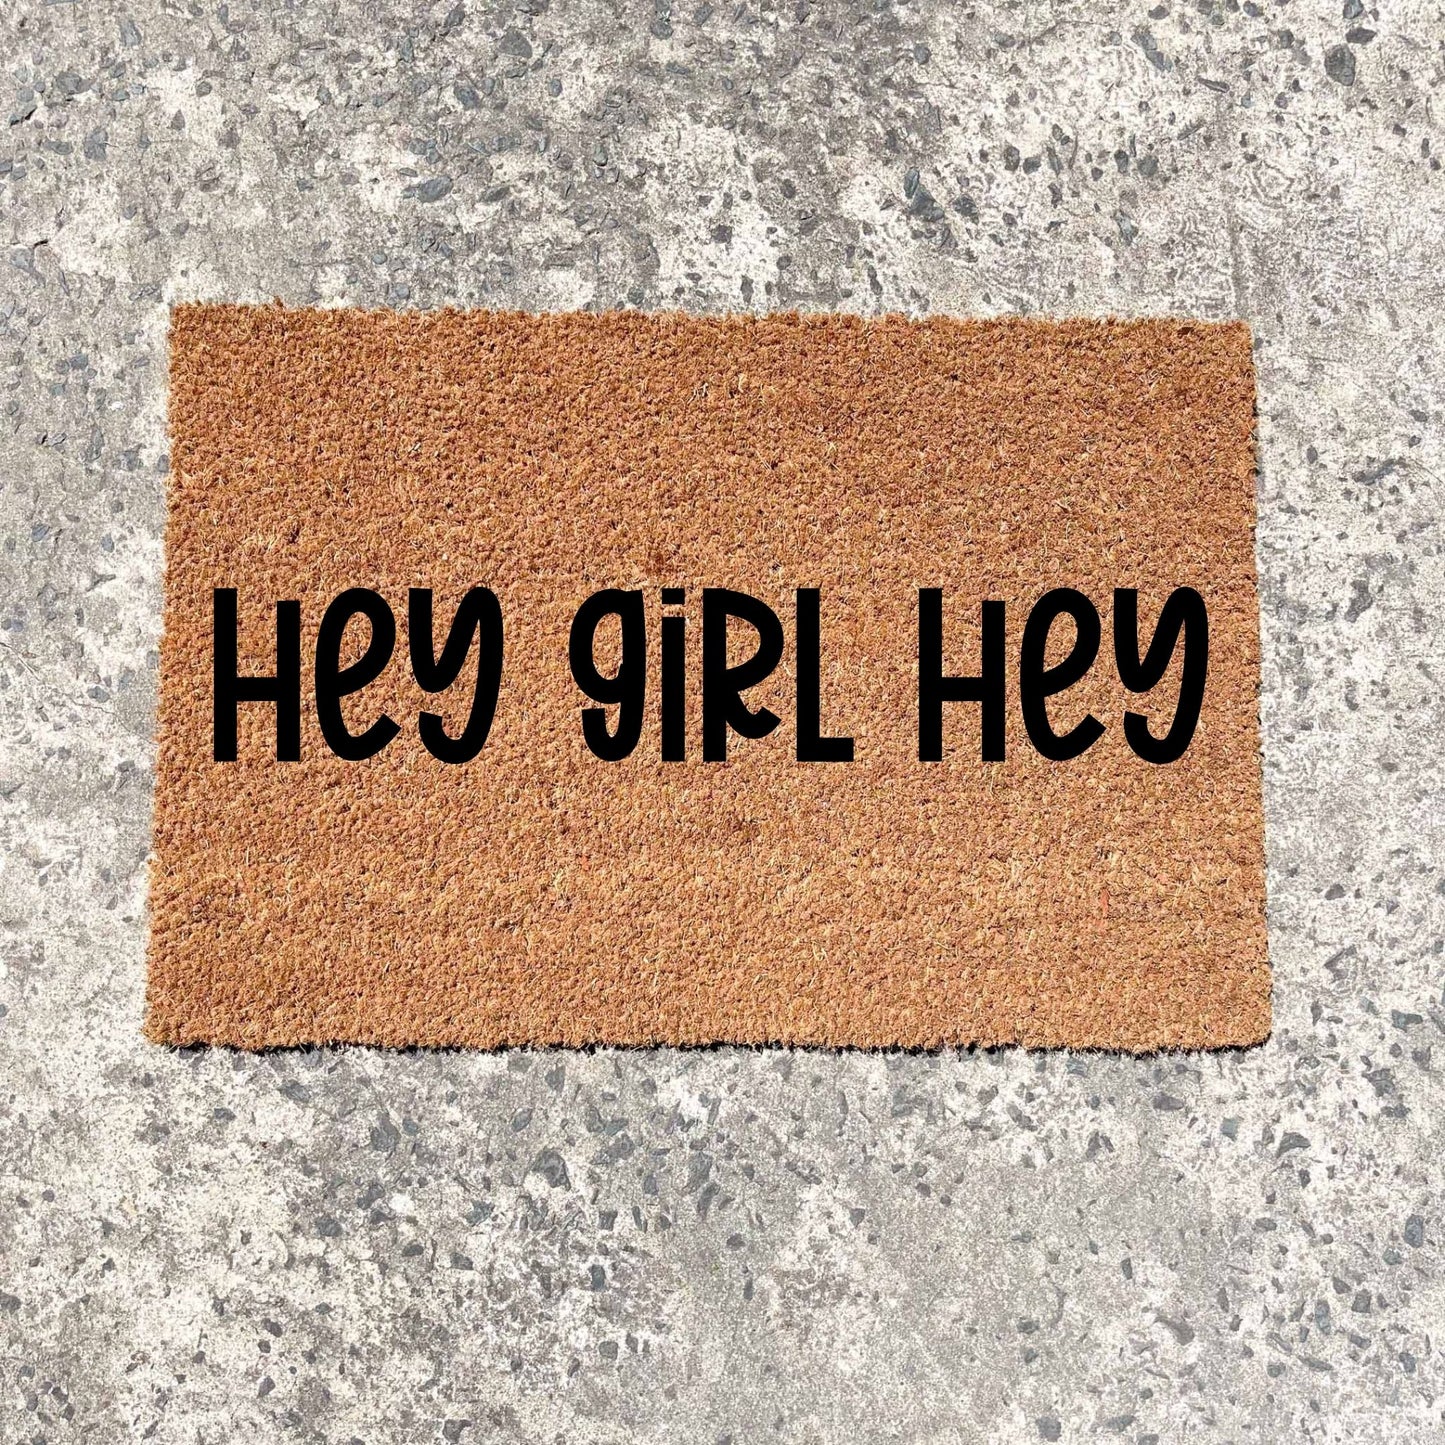 Hey girl hey doormat, unique doormat, custom doormat, personalised doormat